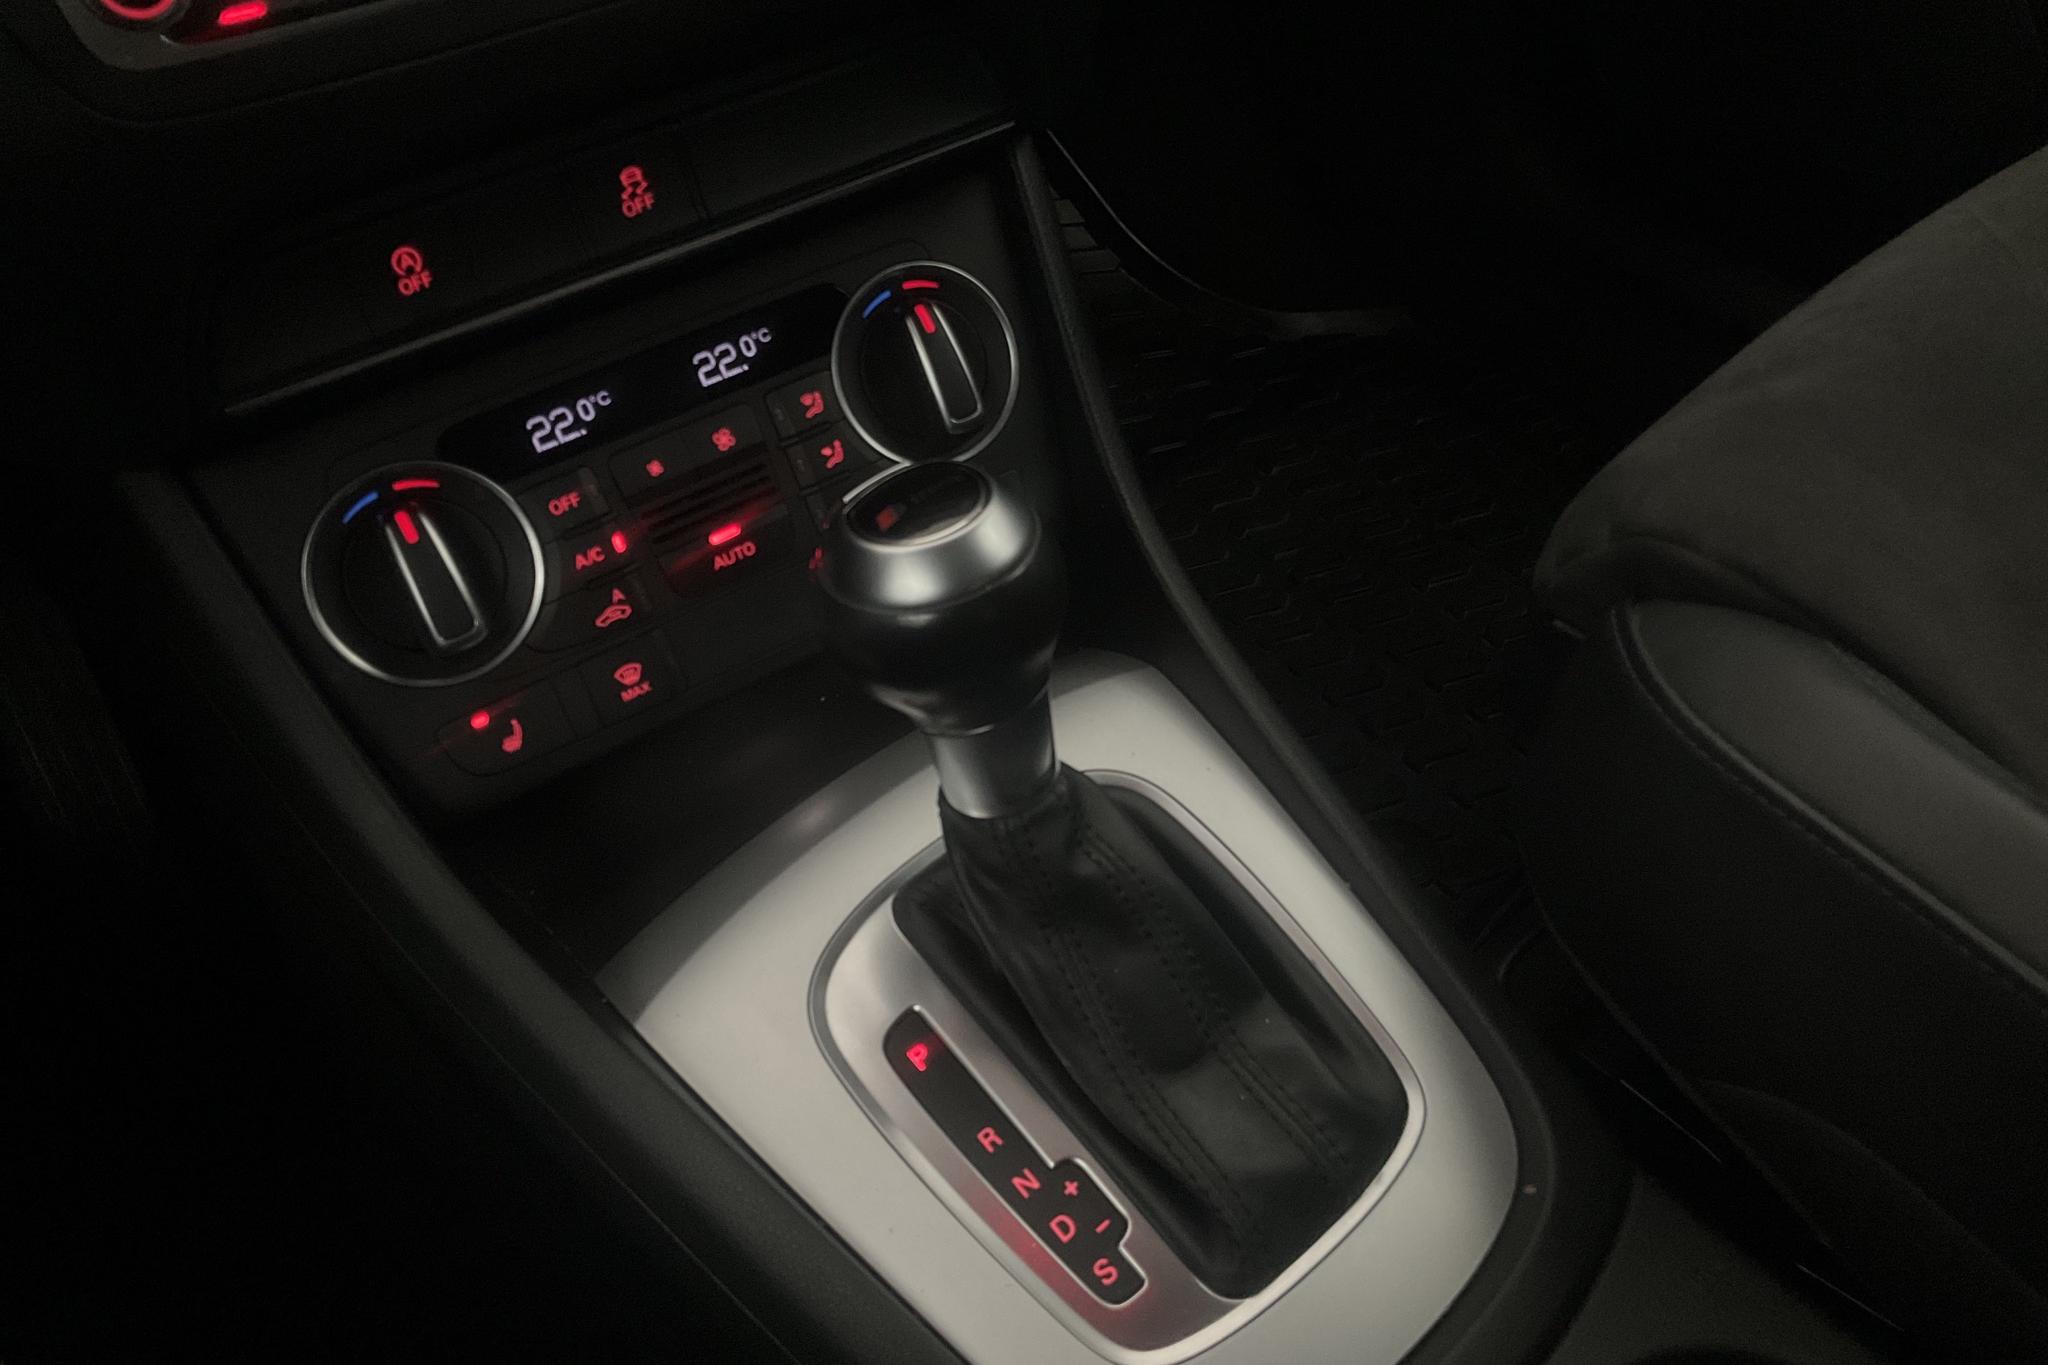 Audi Q3 2.0 TDI quattro (150hk) - 140 850 km - Automatic - gray - 2016